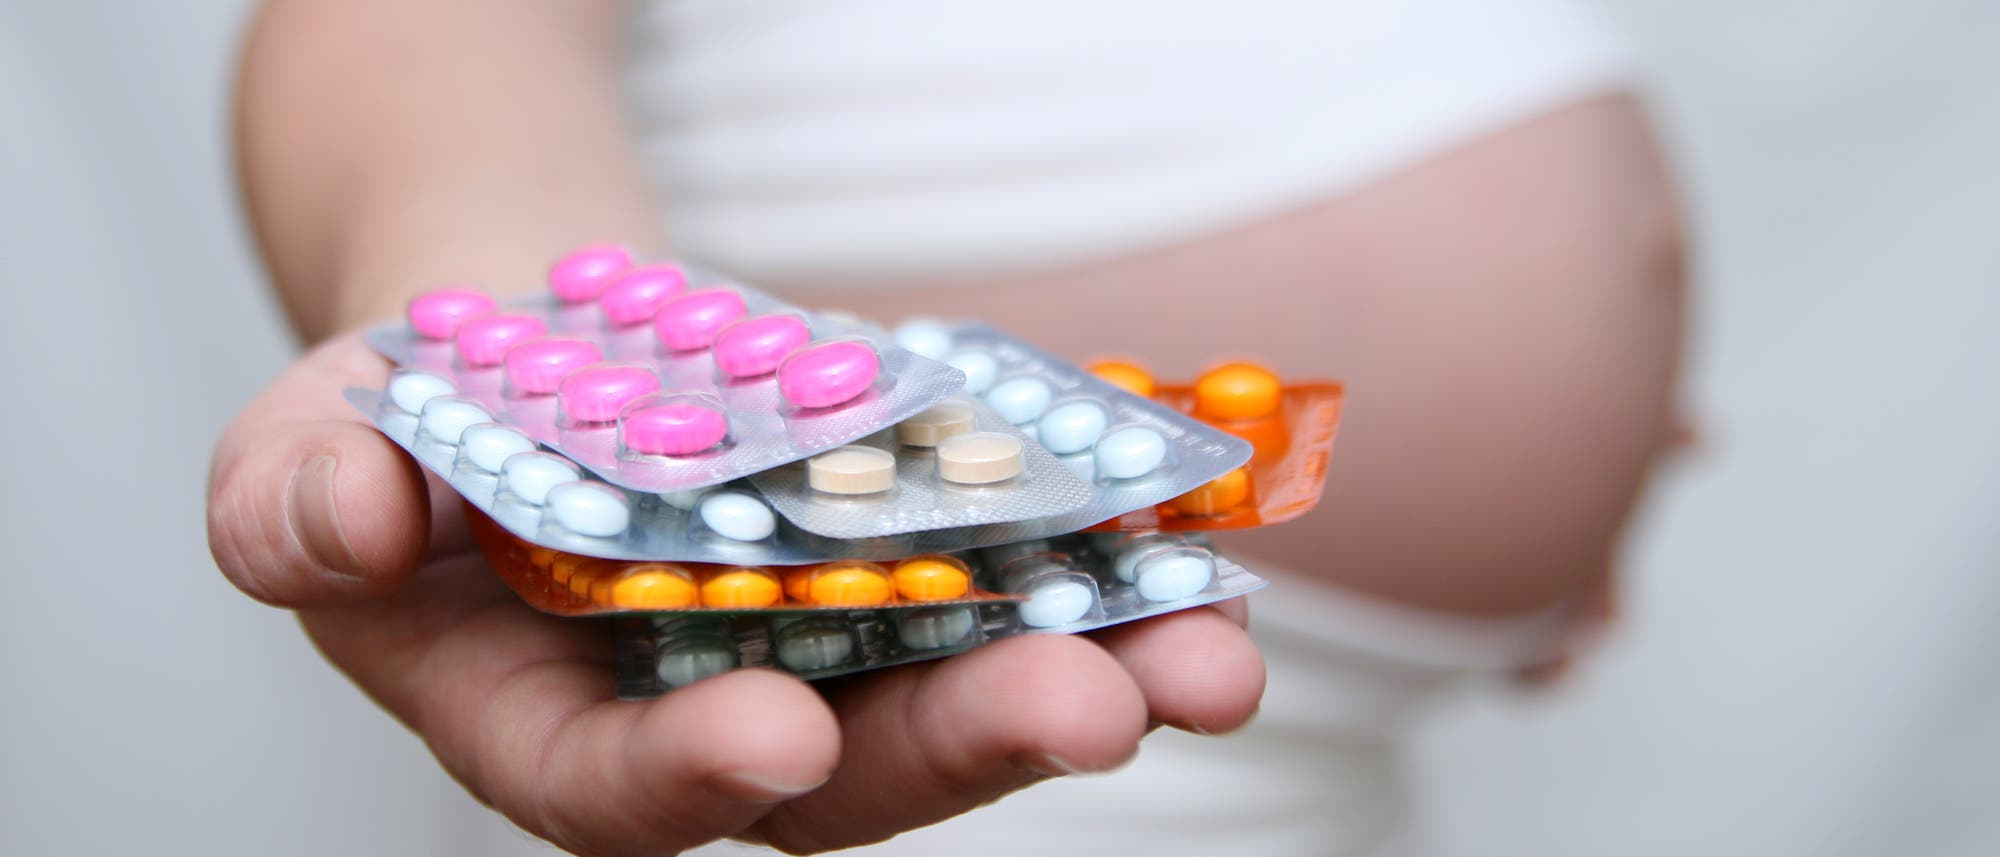 Medikamente, die eine Frau während der Schwangerschaft einnimmt, wirken auch auf das Baby